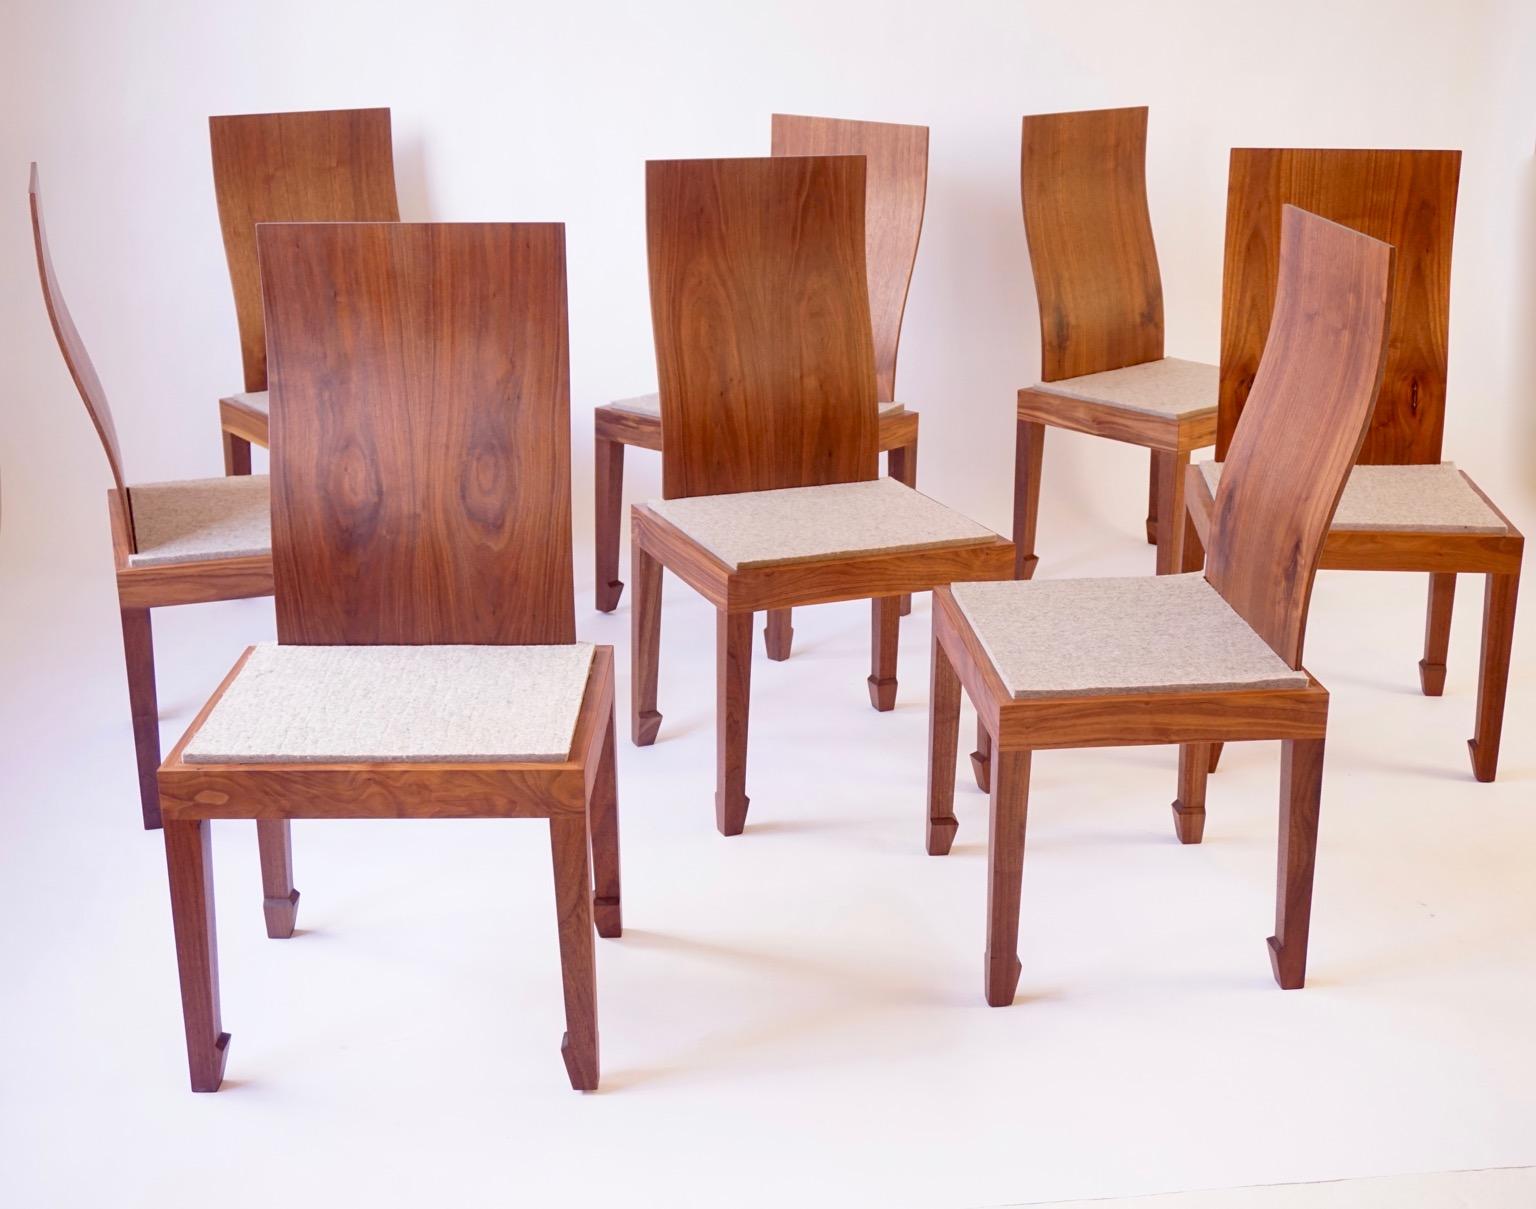 La forme de la chaise de salle à manger chinoise 2002 reprend certaines des courbes et formes traditionnelles des premières chaises chinoises, mais avec une touche de modernité. Le dossier en noyer noir stratifié présente un degré de flexibilité